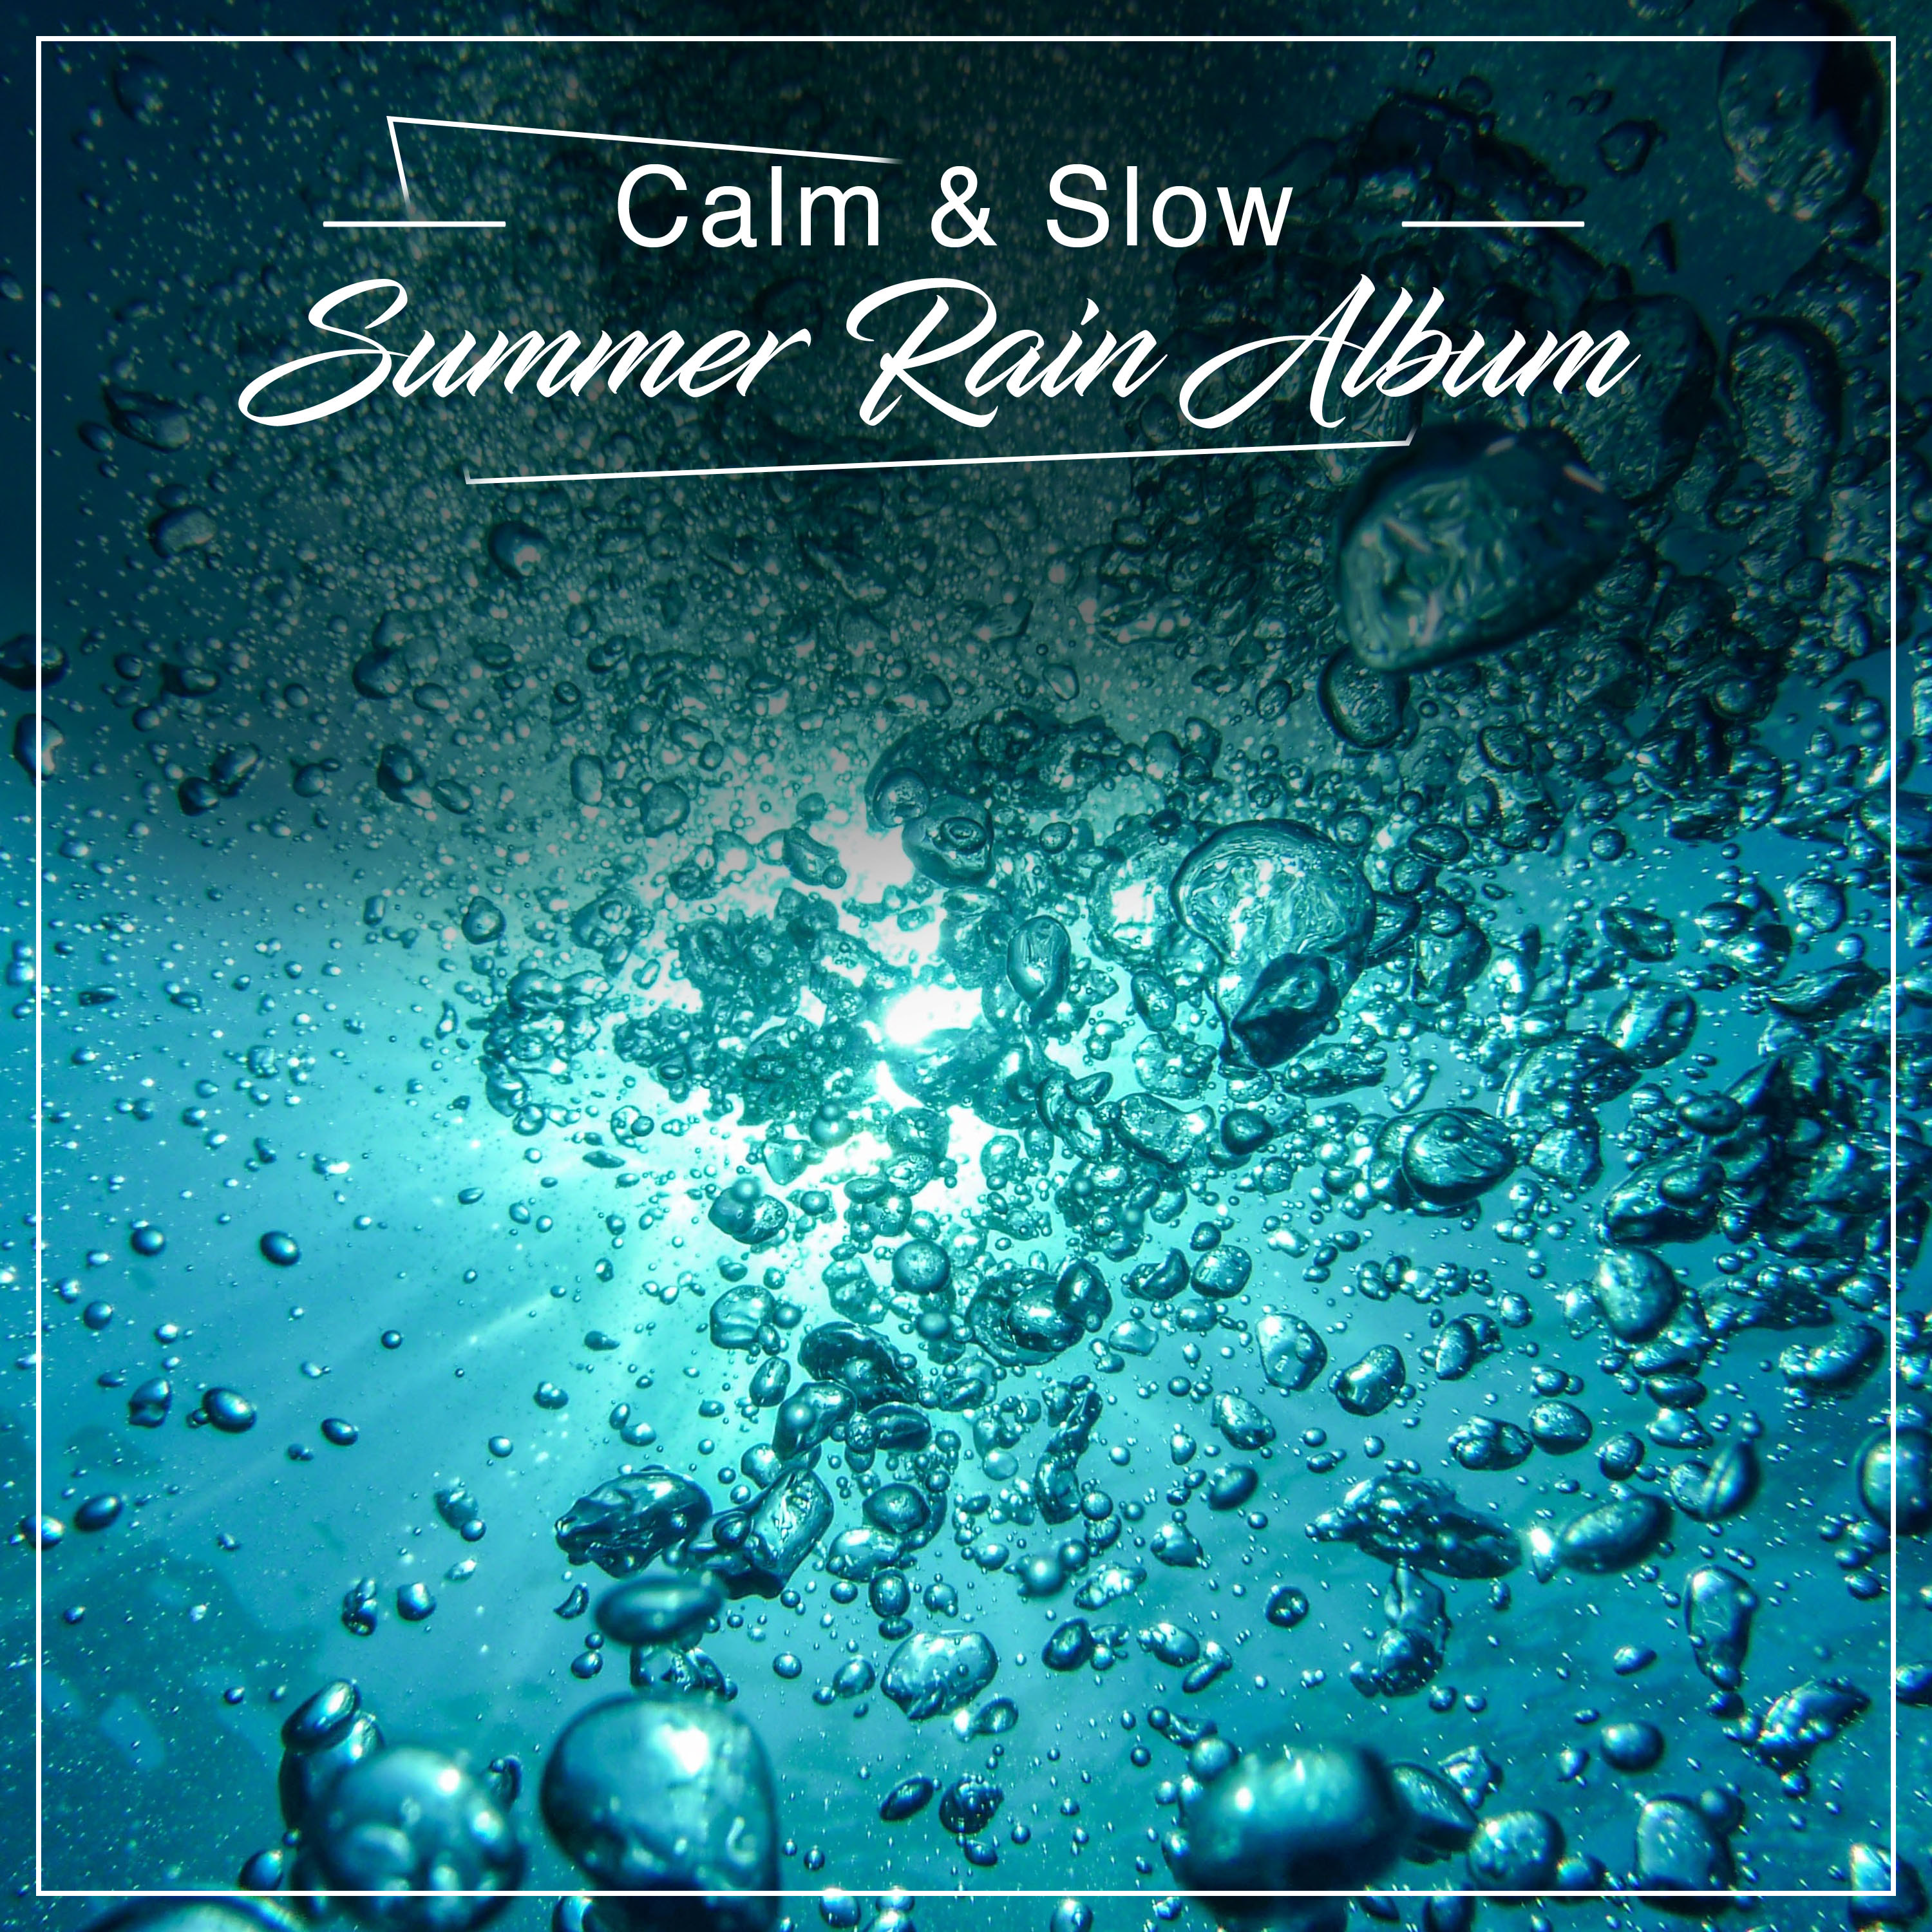 #11 Calm & Slow Summer Rain Album